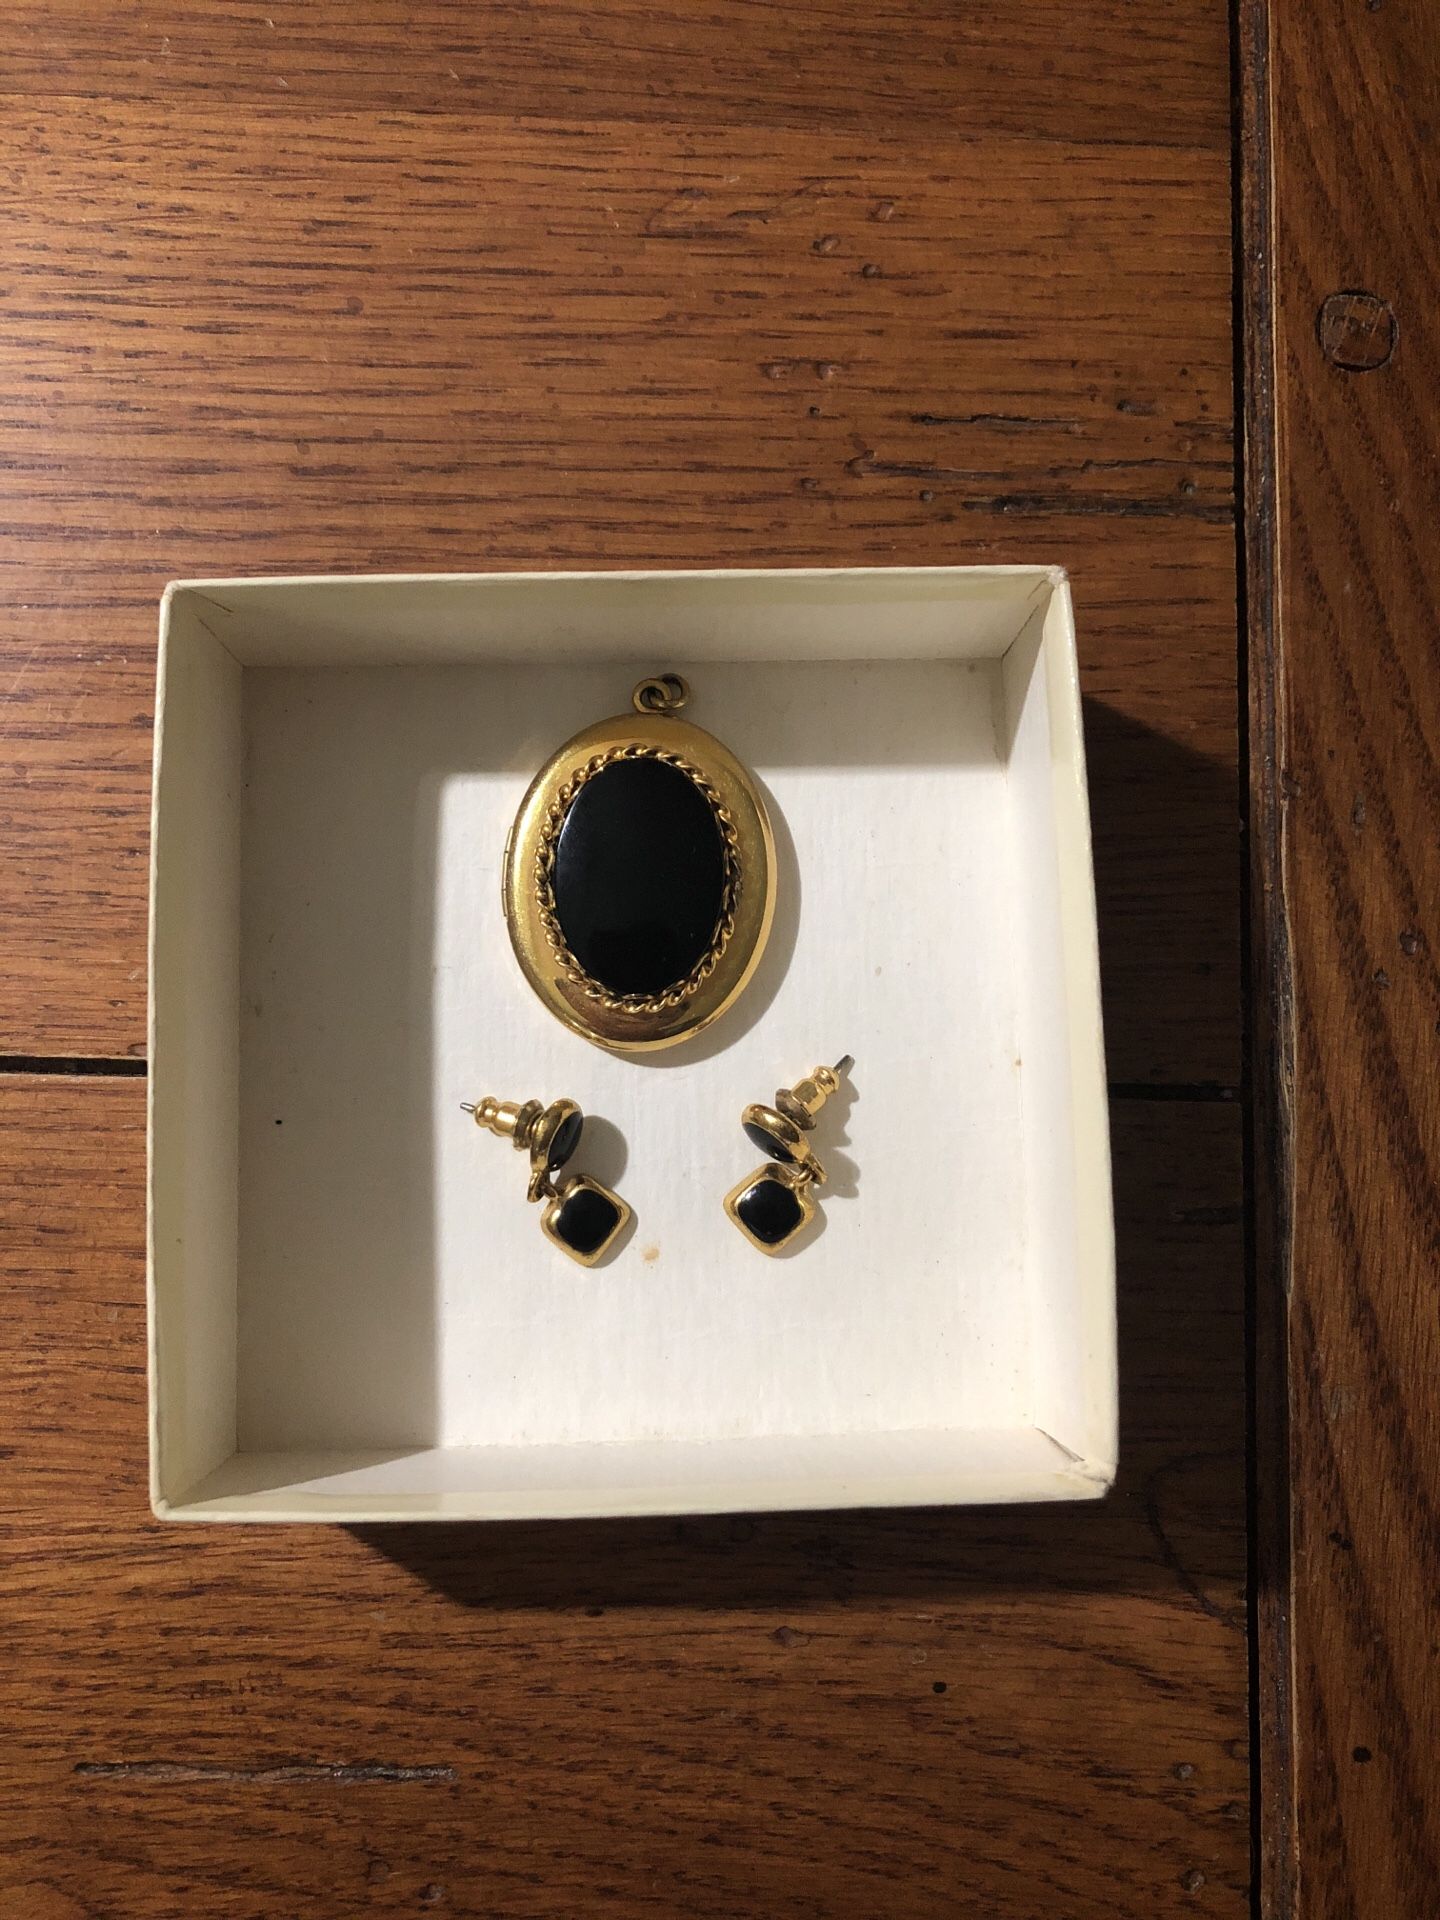 Black onyx locket and earrings.